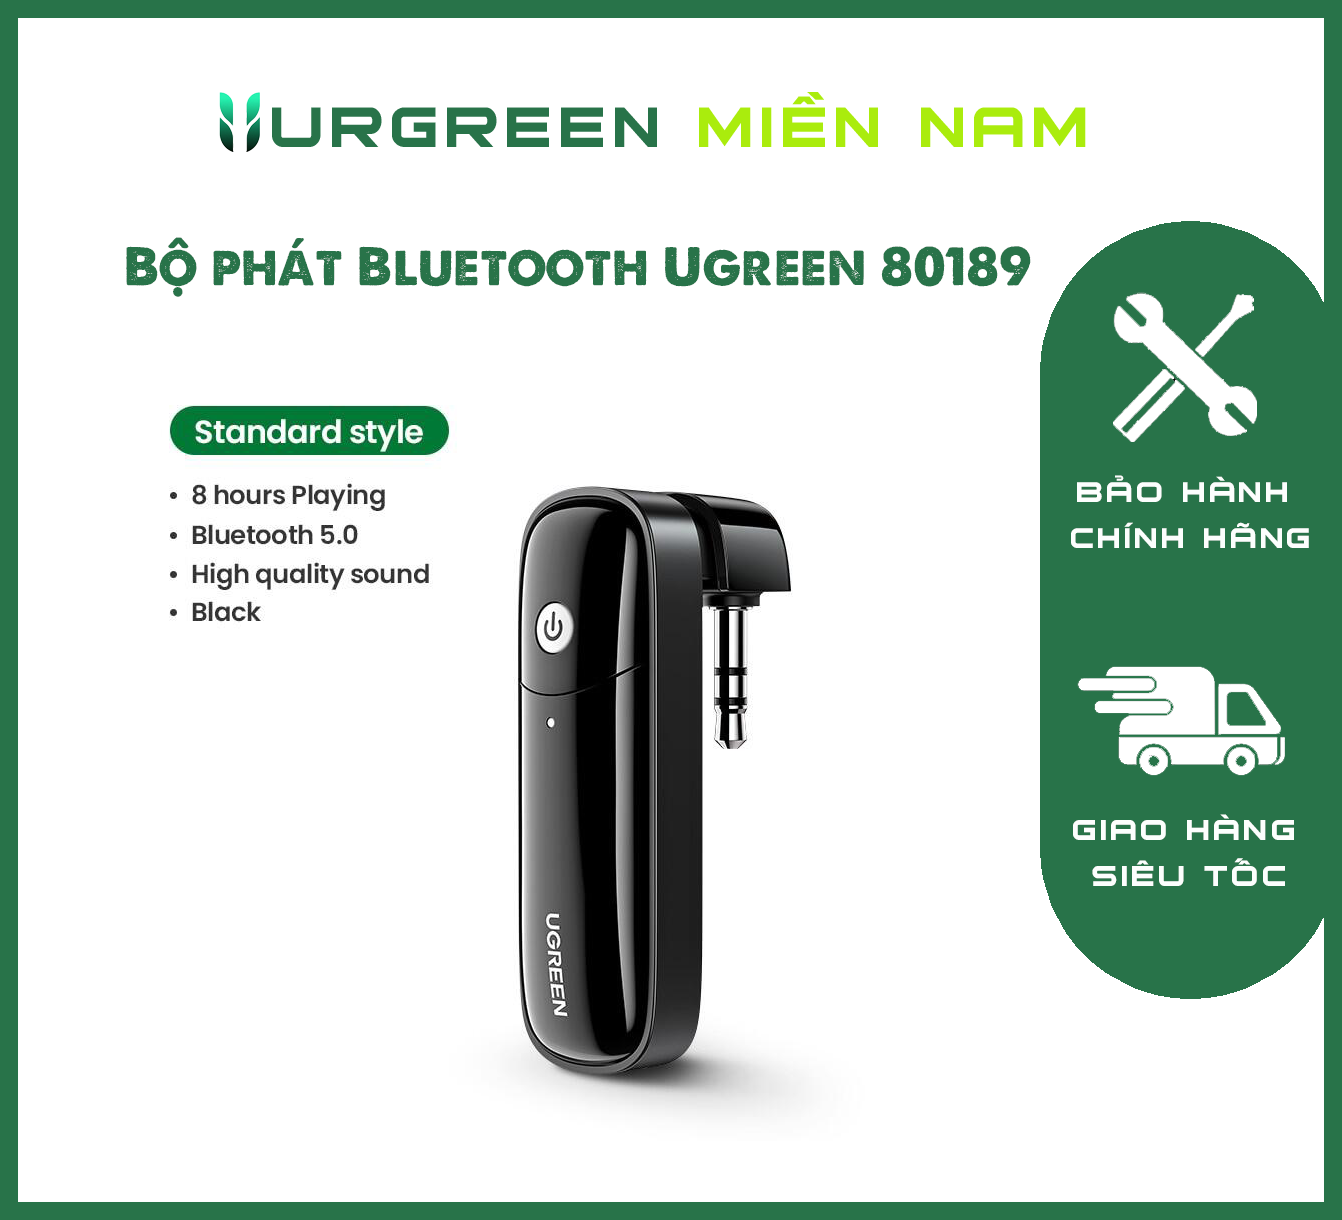 Bộ phát Bluetooth Ugreen 80189